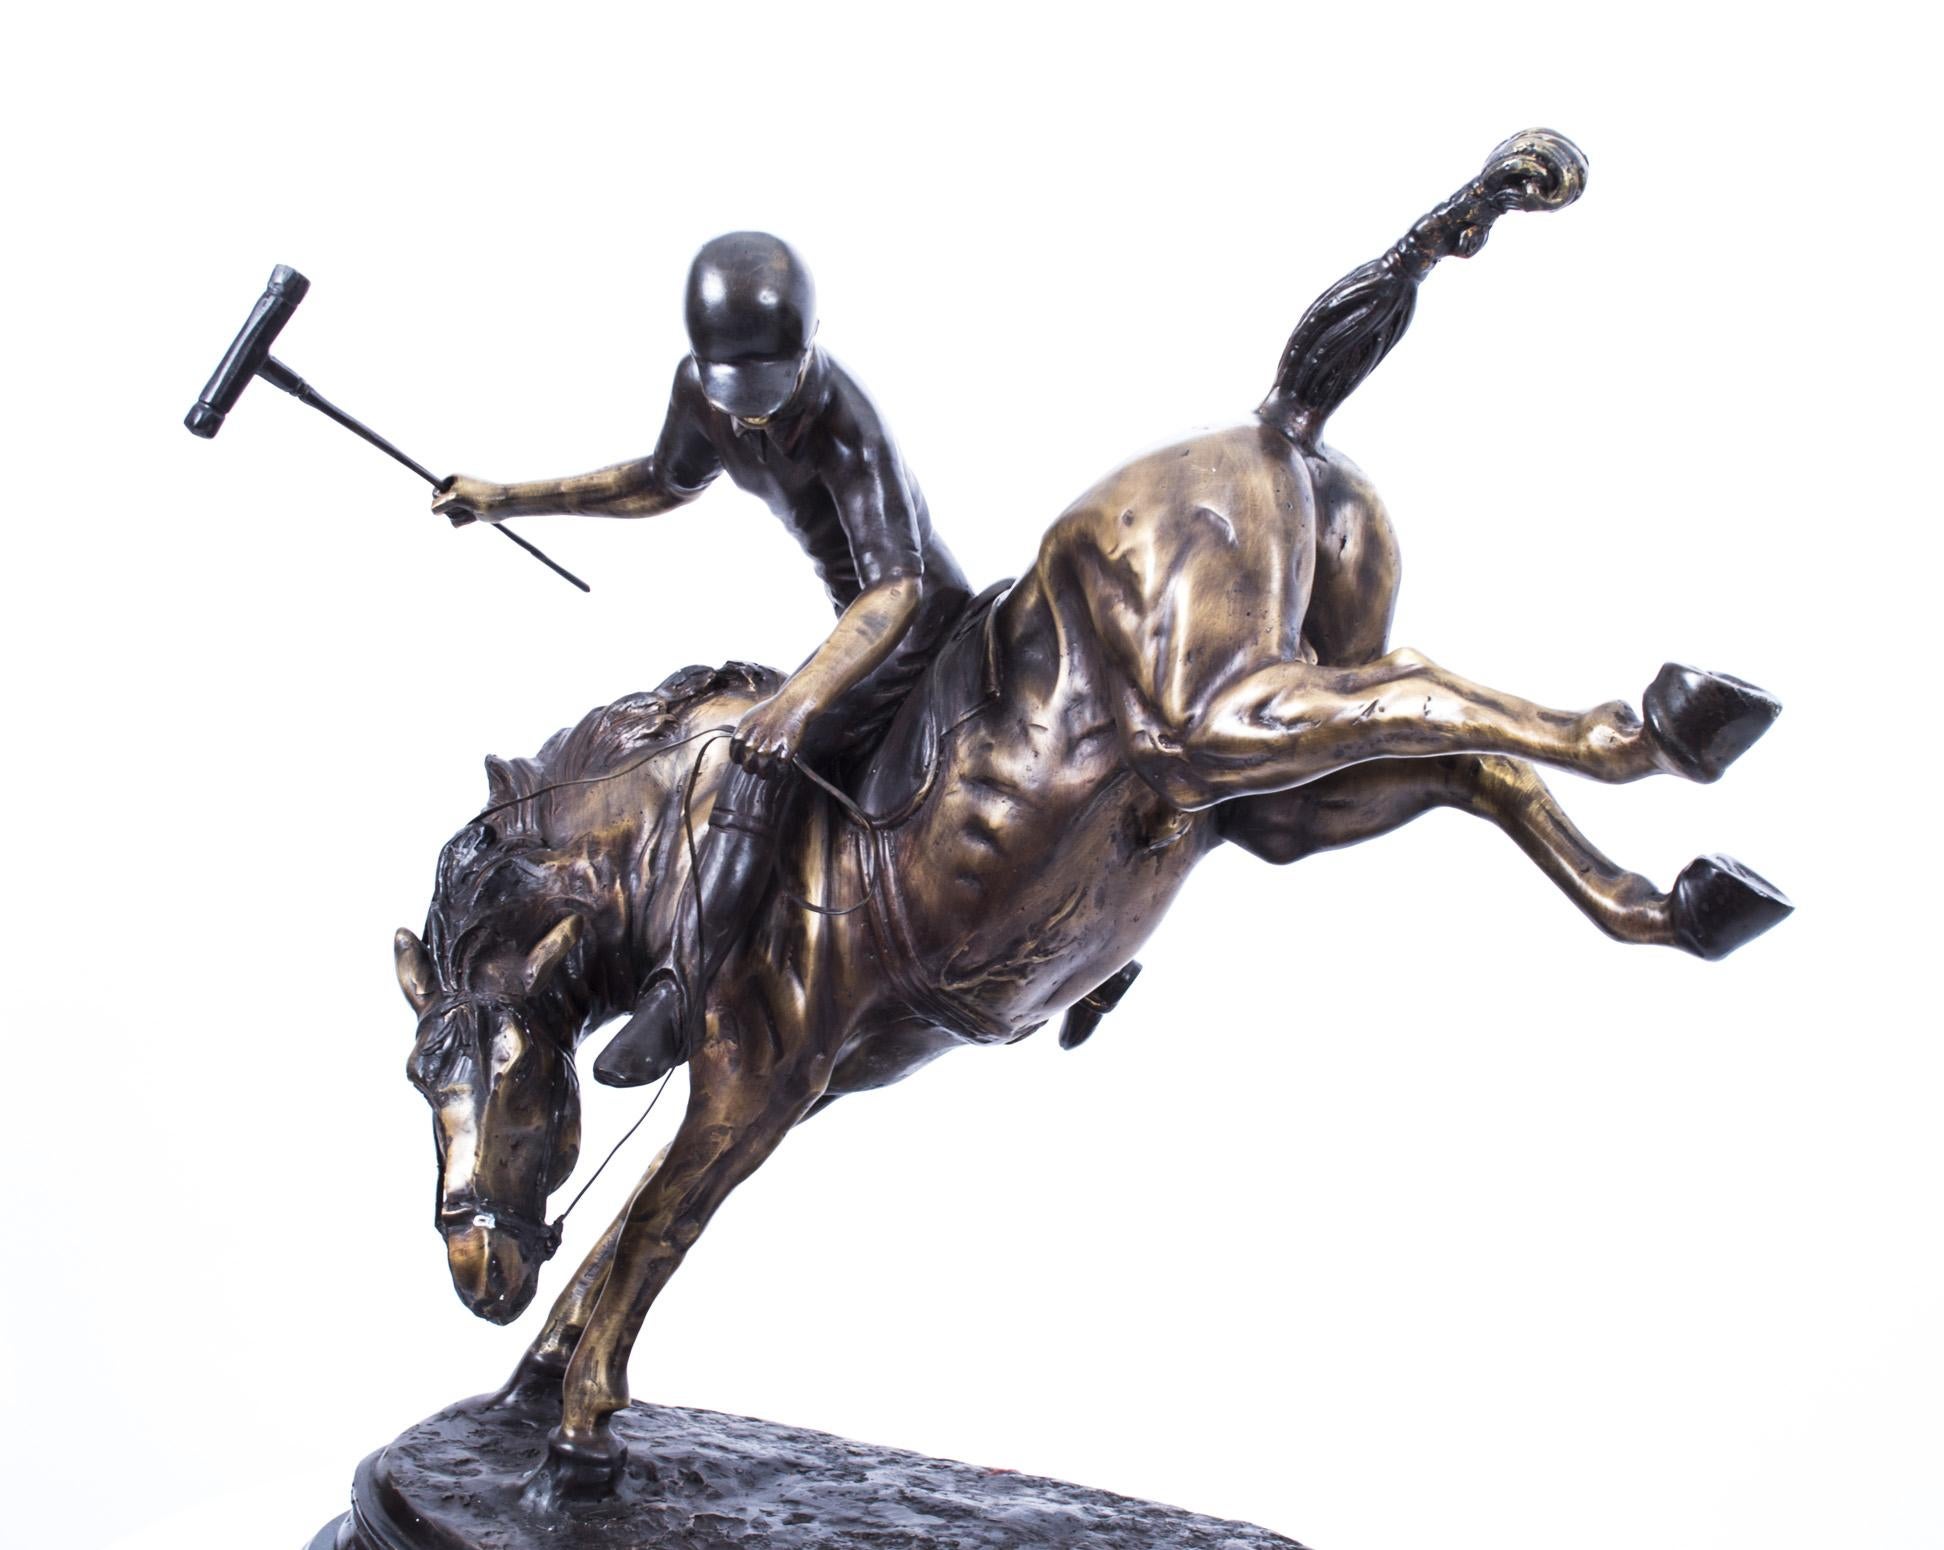 Schöne Bronzeskulptur eines Polospielers auf einem bockenden Pferd aus dem letzten Viertel des 20. Jahrhunderts.

Der Künstler hat diese Szene mit den in die Luft gestreckten Hinterbeinen des Pferdes erstaunlich gut eingefangen.

Die Liebe zum